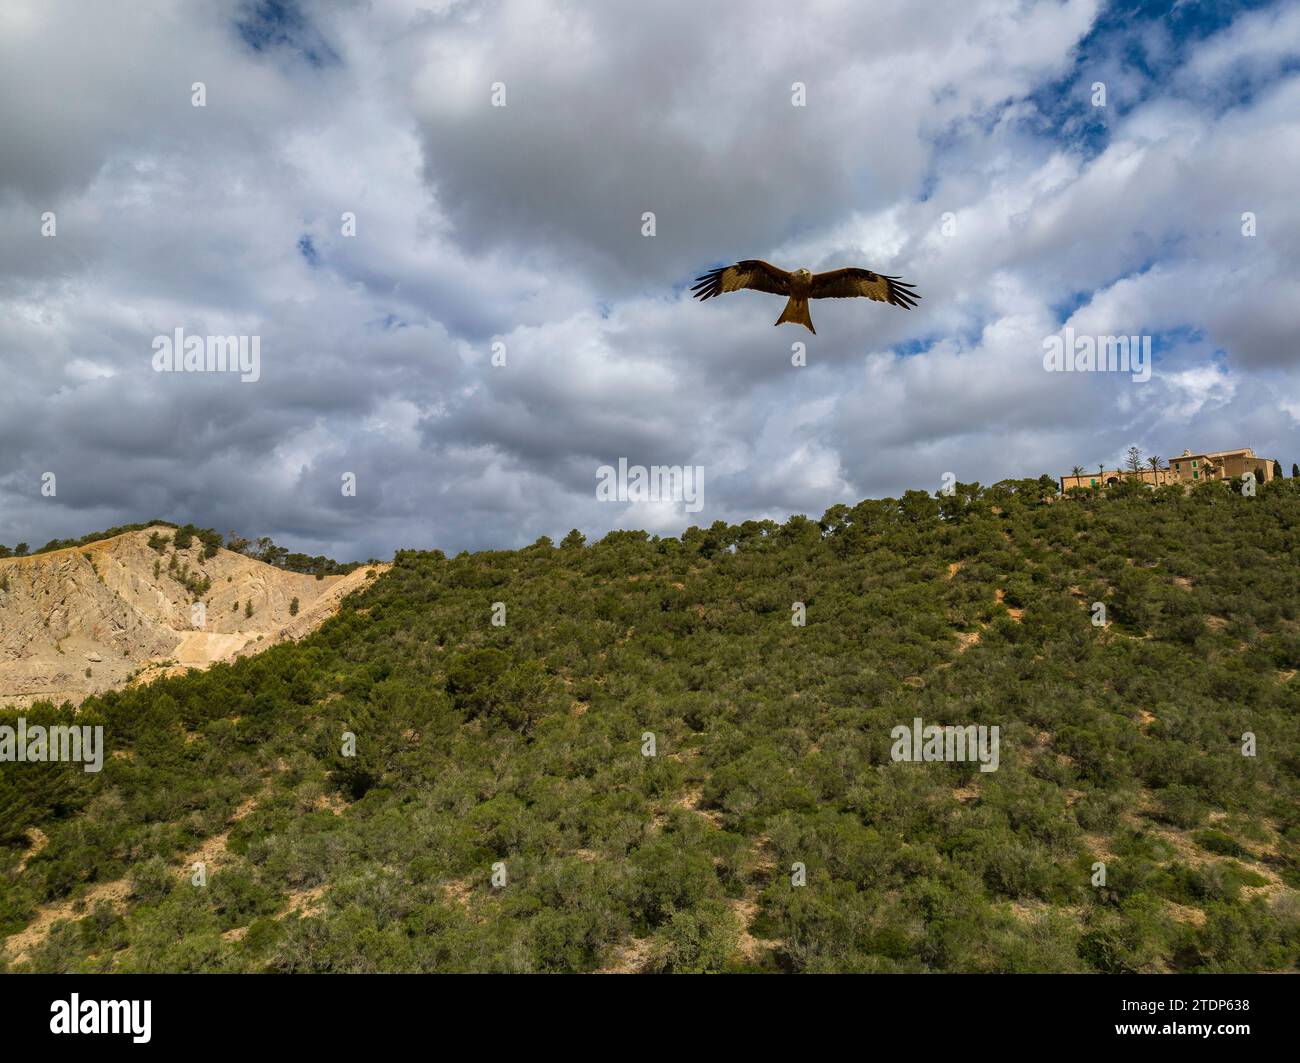 Un cerf-volant rouge (Milvus milvus) survolant les forêts du Puig de Monti-sion (Porreres, Majorque, Îles Baléares, Espagne) Banque D'Images